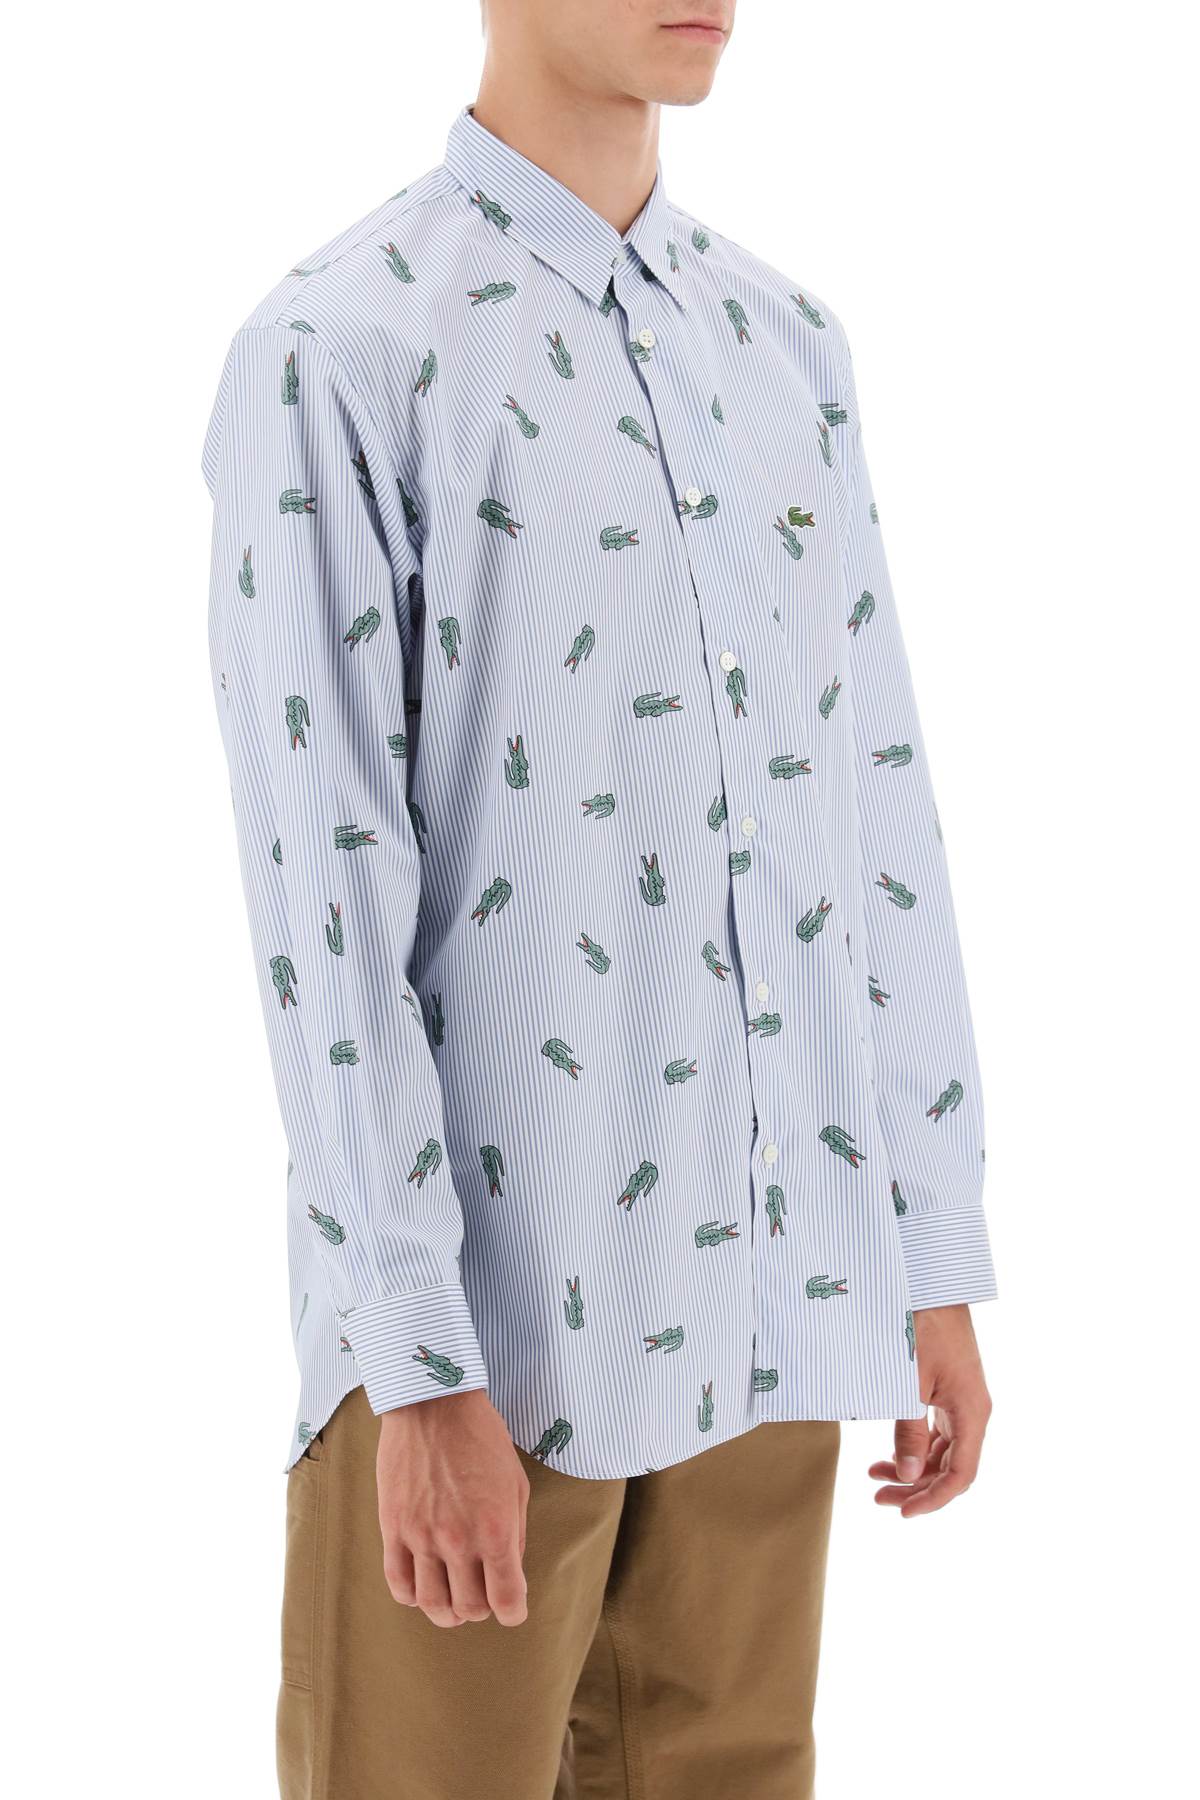 Comme des garcons shirt x lacoste oxford shirt with crocodile motif-1